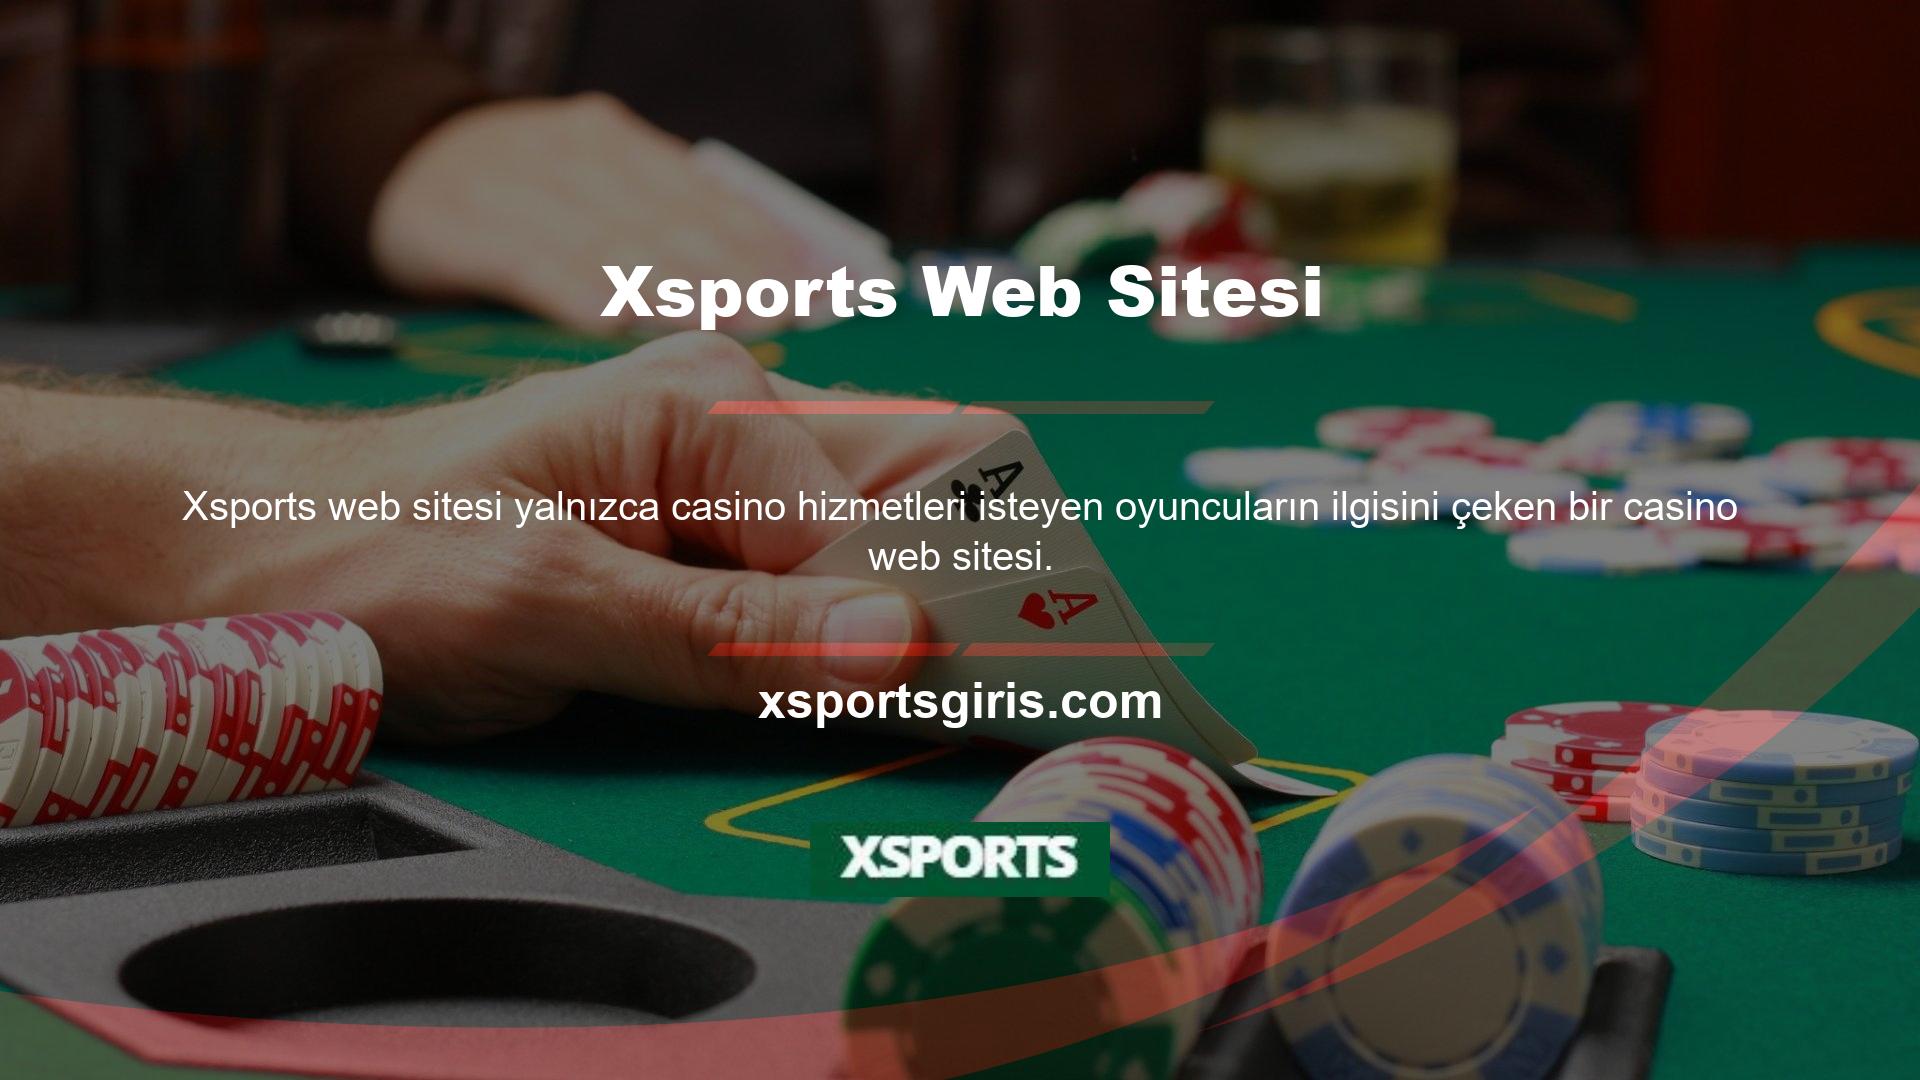 Canlı Casino Oyunları, Xsports web sitesi, yalnızca casino hizmetleri isteyen oyuncuların ilgisini çeken bir casino sitesidir